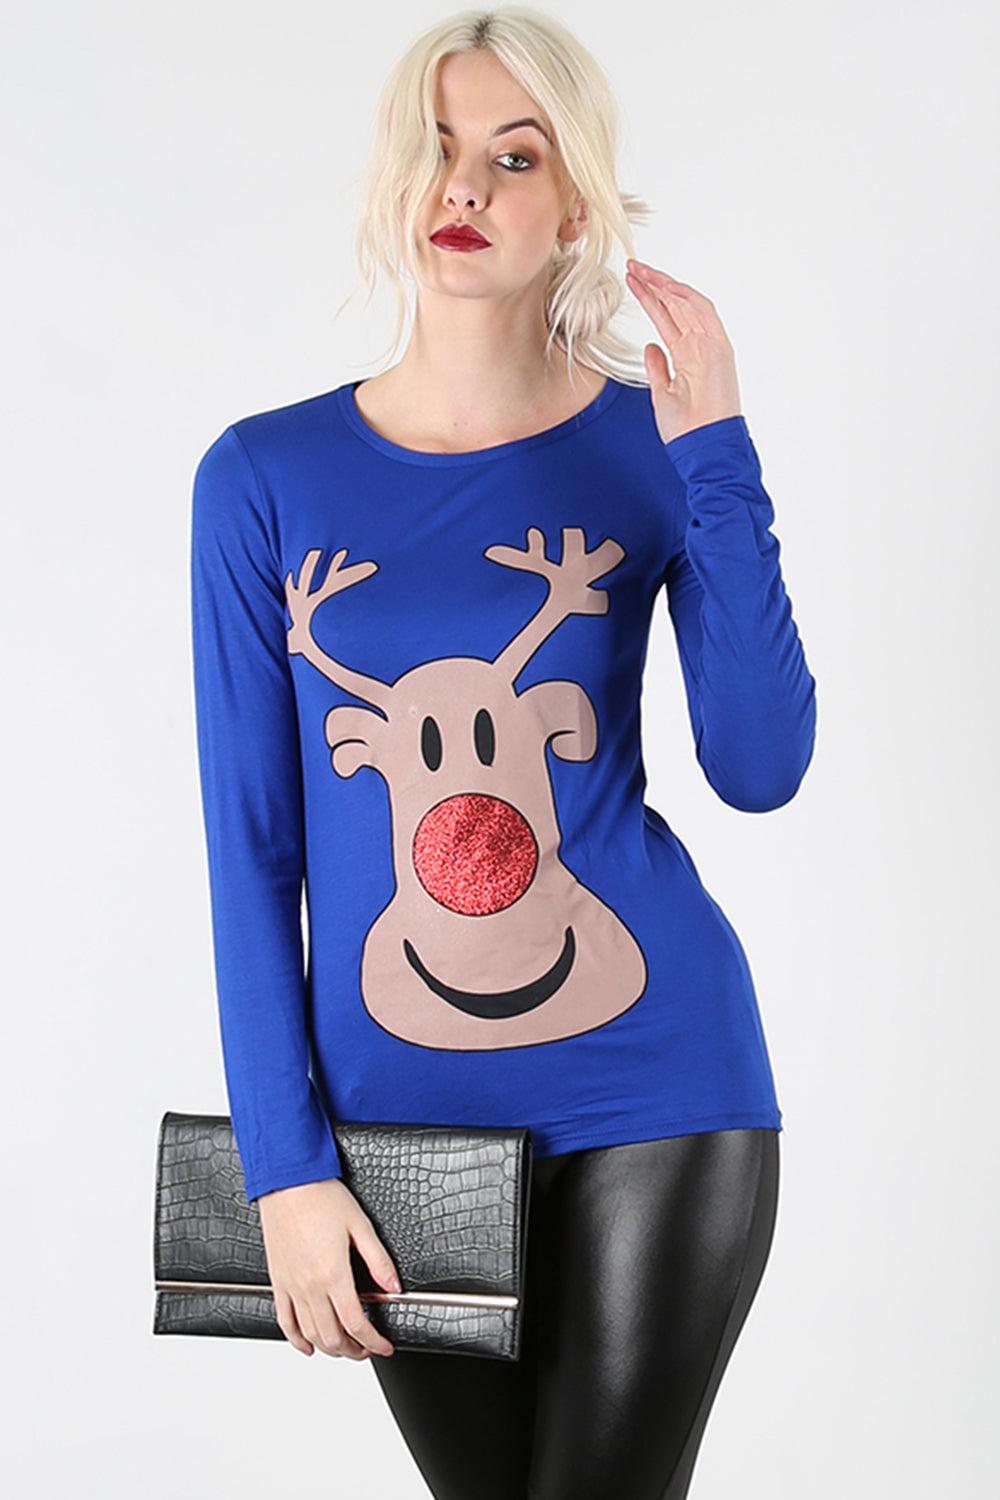 Isla Christmas Glitter Nose Reindeer T Shirt